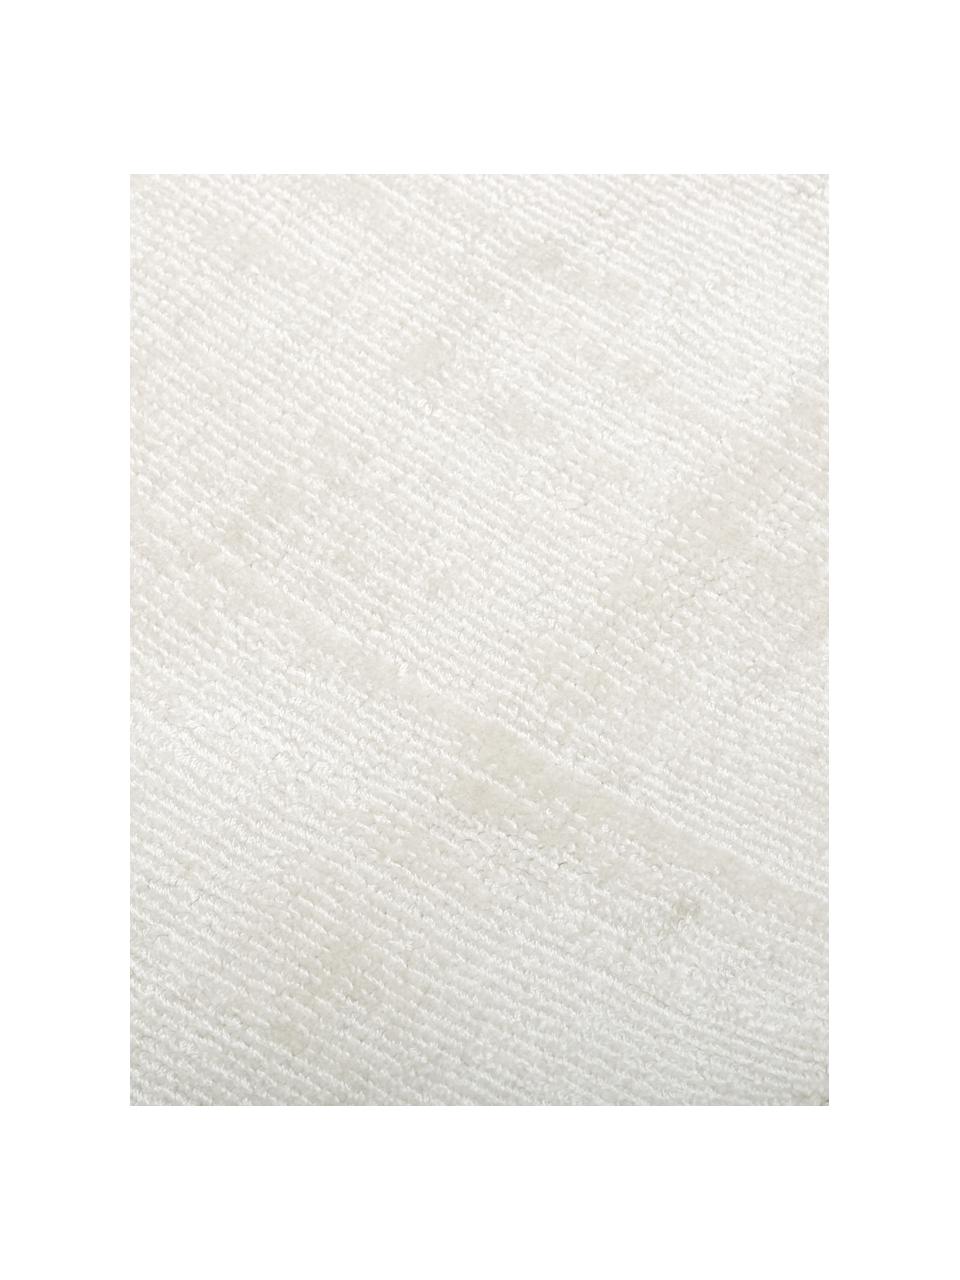 Tappeto in viscosa color avorio tessuto a mano Jane, Retro: 100% cotone, Color avorio, Larg. 120 x Lung. 180 cm (taglia S)